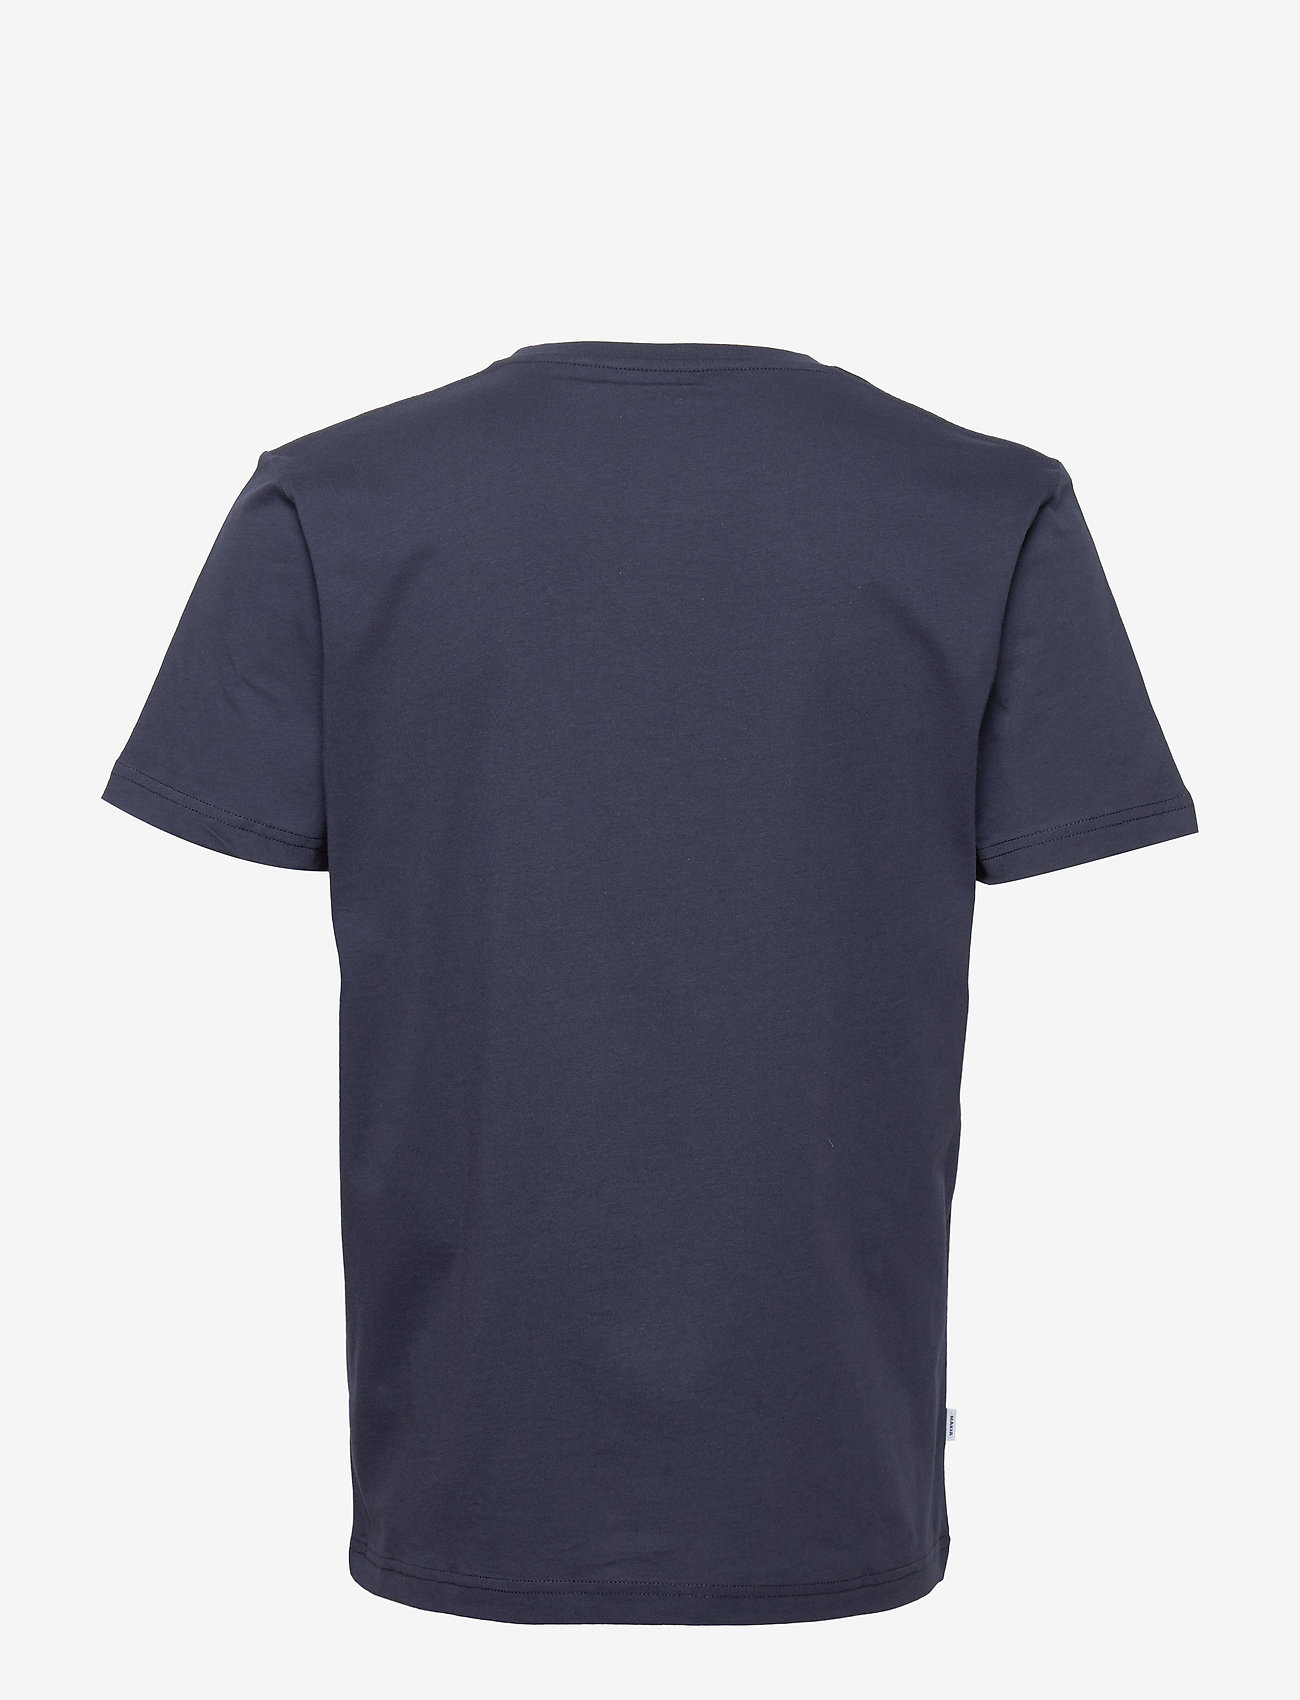 Makia - Brand T-Shirt - madalaimad hinnad - dark blue - 1